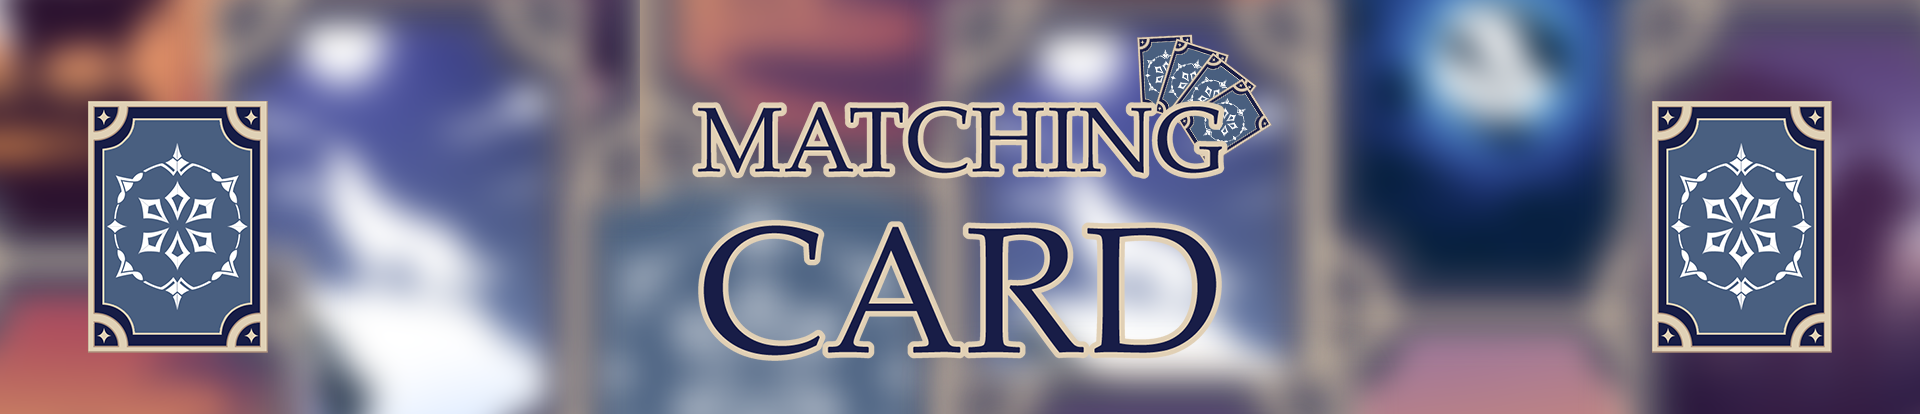 Game Matching Card